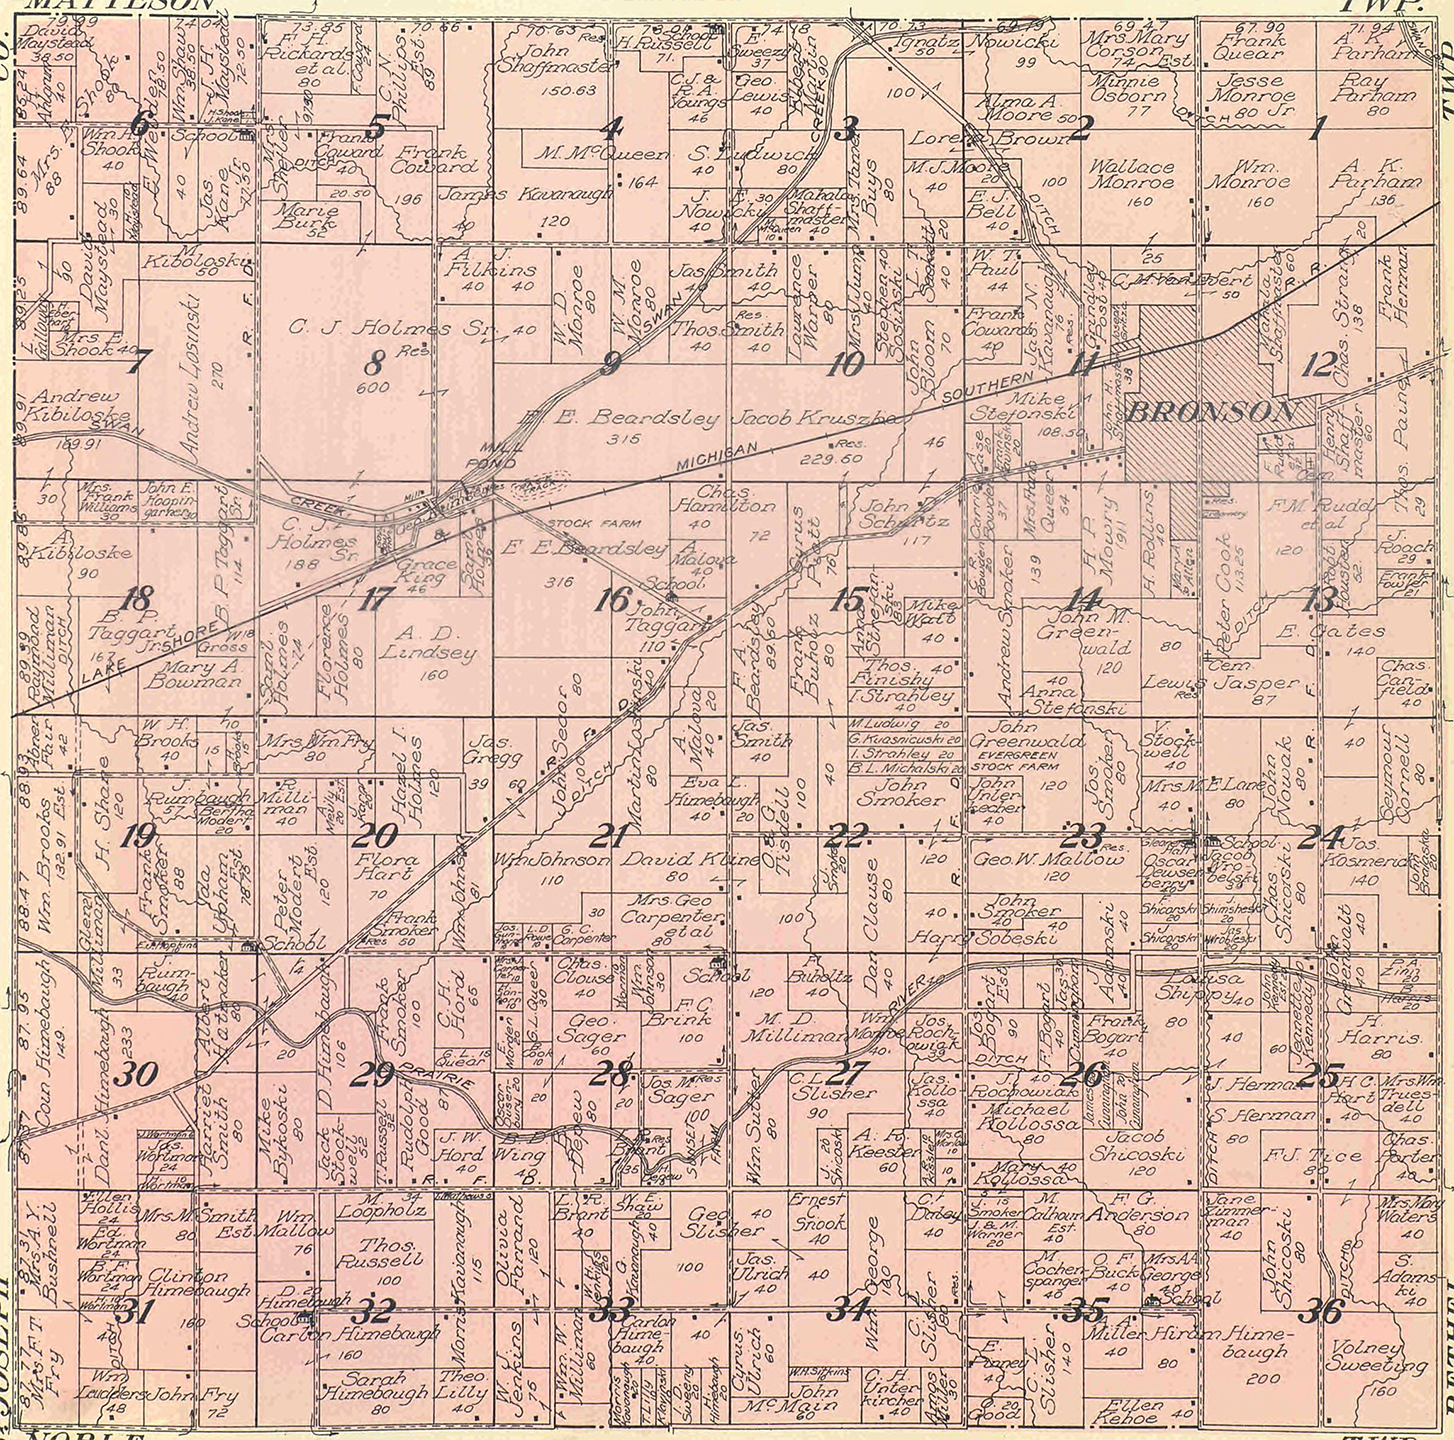 1915 Bronson Township, Michigan landownership map